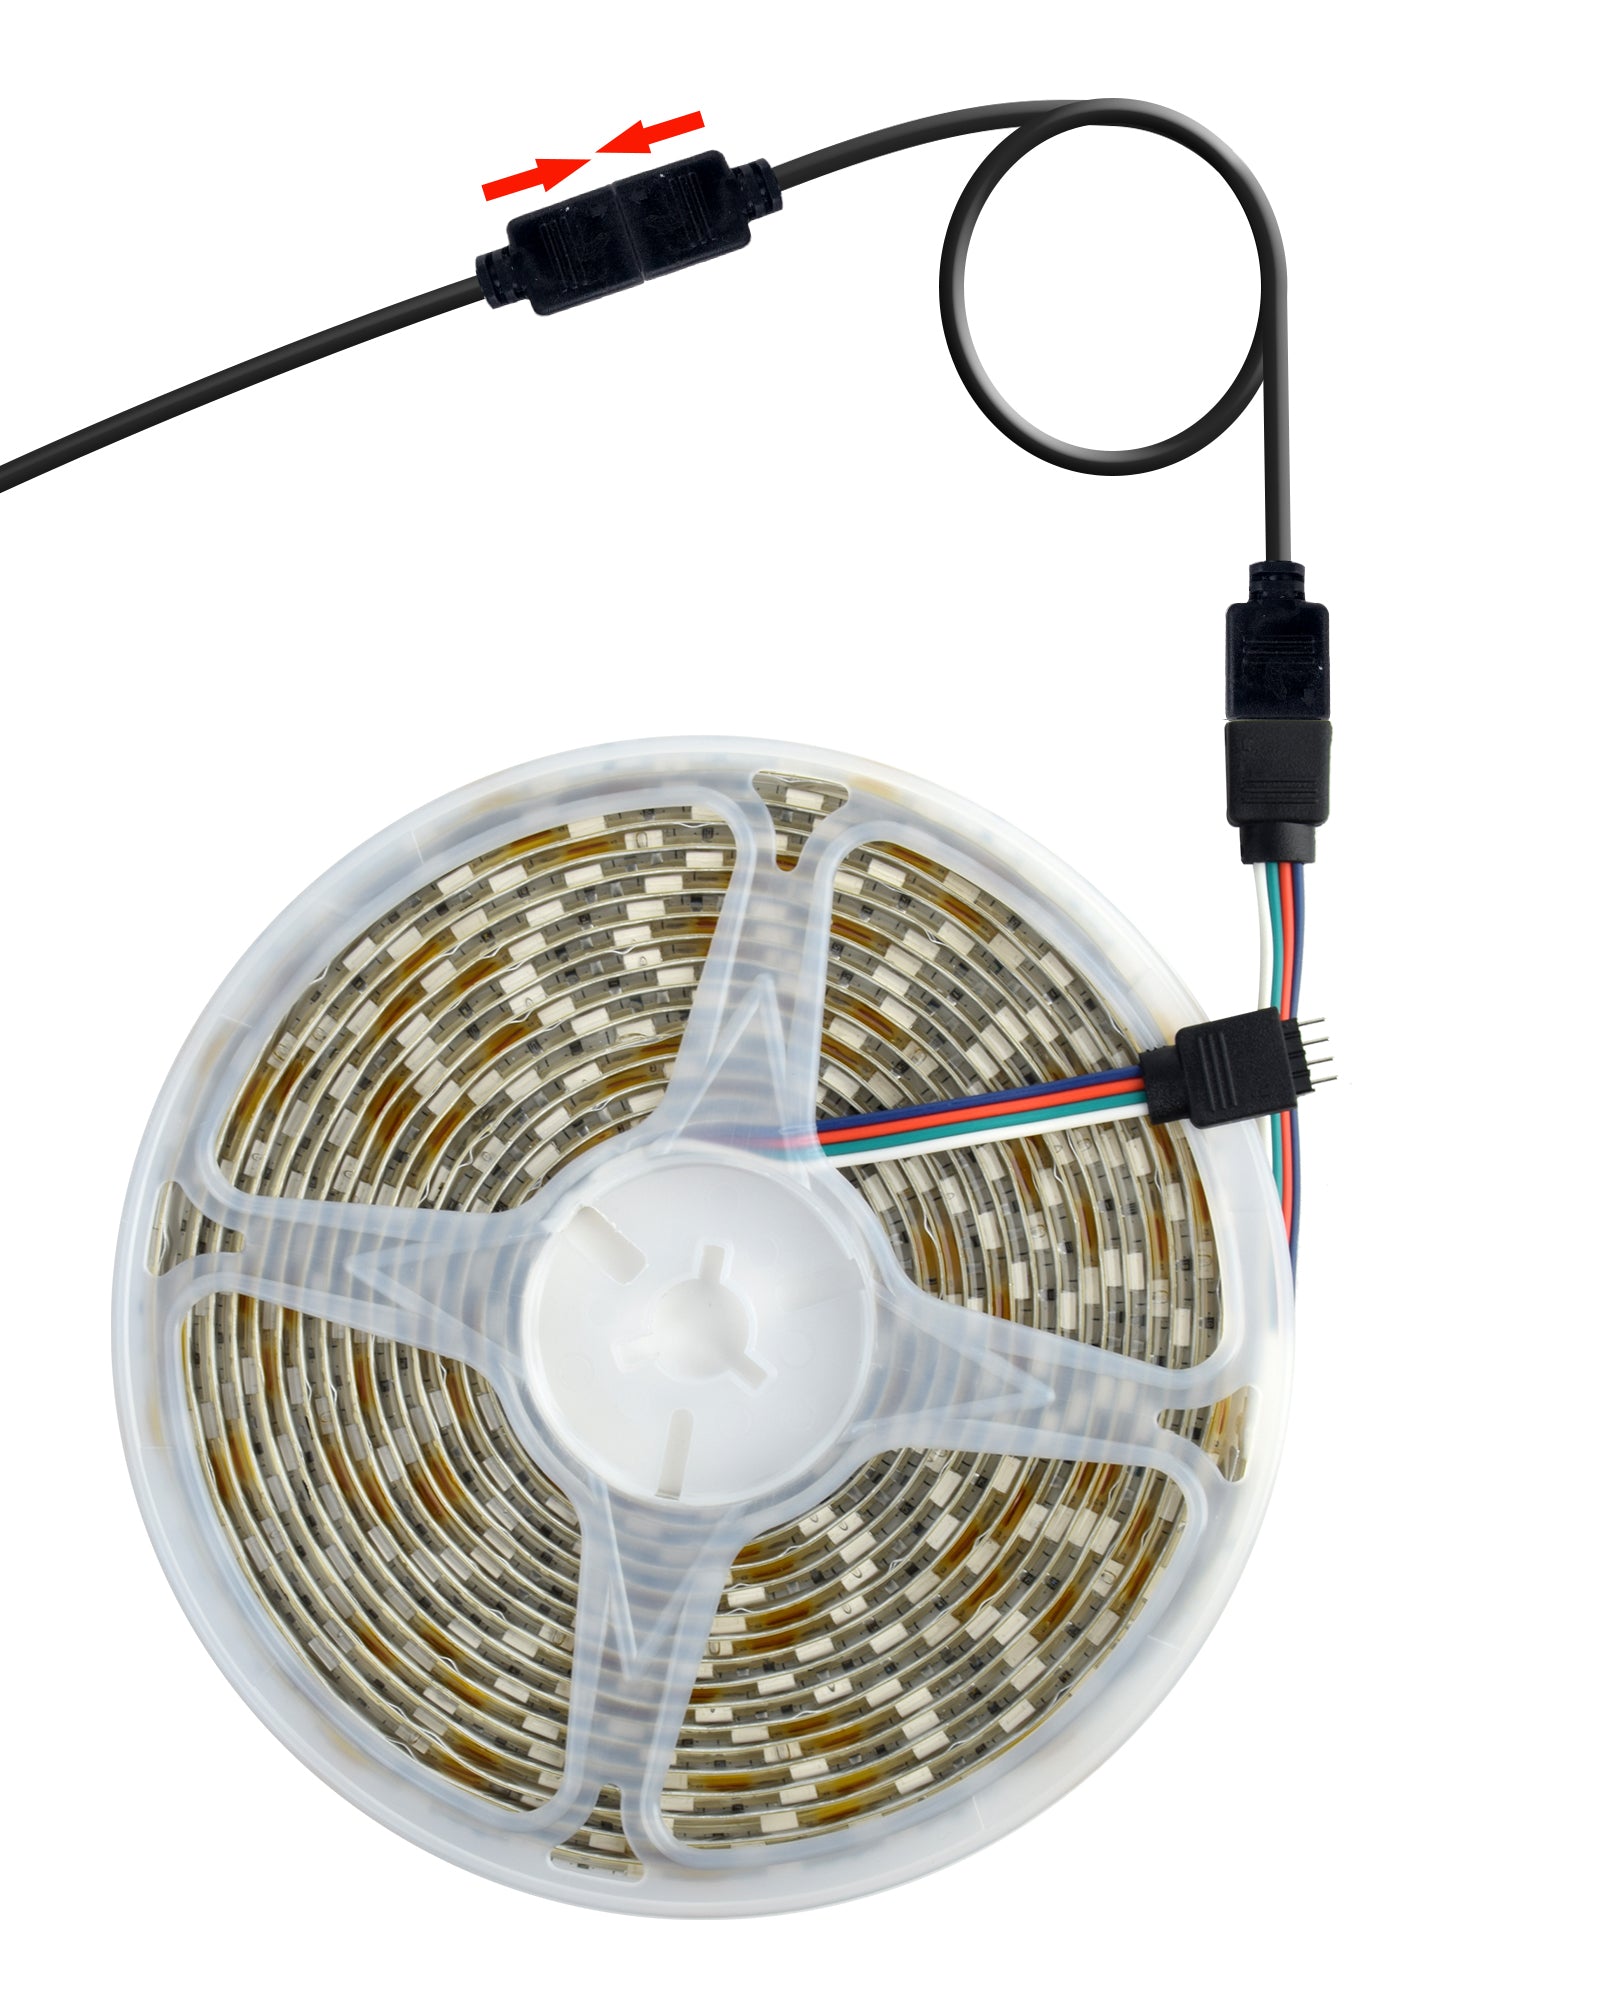 LED Streifenlicht Zubehör|Verlängerung Anschluss Kabel für LED RGB-Strip 4 pin, Verbinder, geeignet für LED RGB Leiste Streifen - Euroharry GmbH